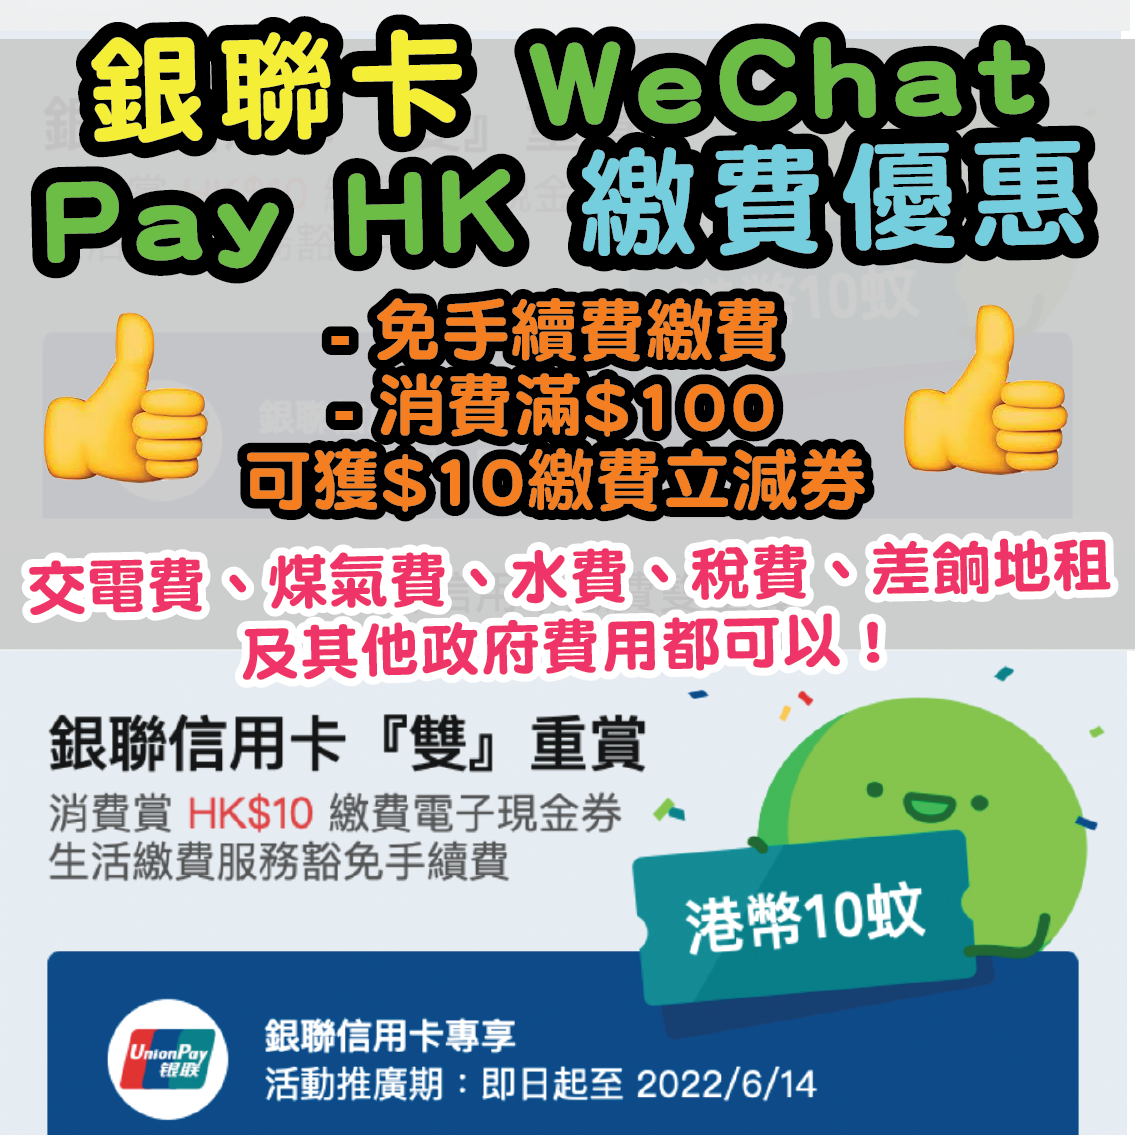 【銀聯信用卡 x WeChat Pay HK繳費優惠】繳費免手續費+ 消費滿$100可獲$10繳費立減券！交稅、電費、煤氣費、水費、差餉地租及其他政府費用都可以！